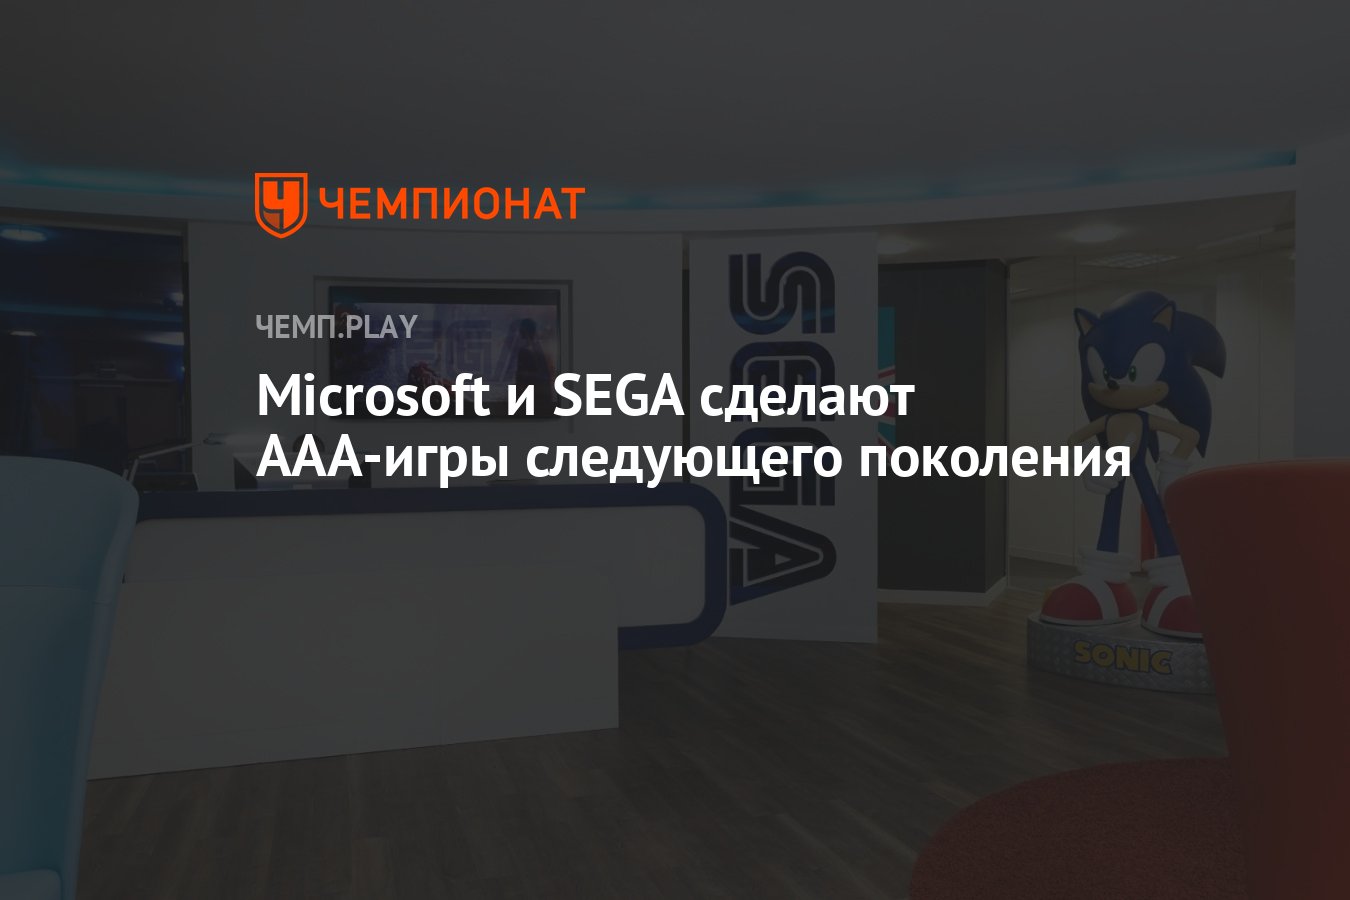 Microsoft и SEGA сделают ААА-игры следующего поколения - Чемпионат